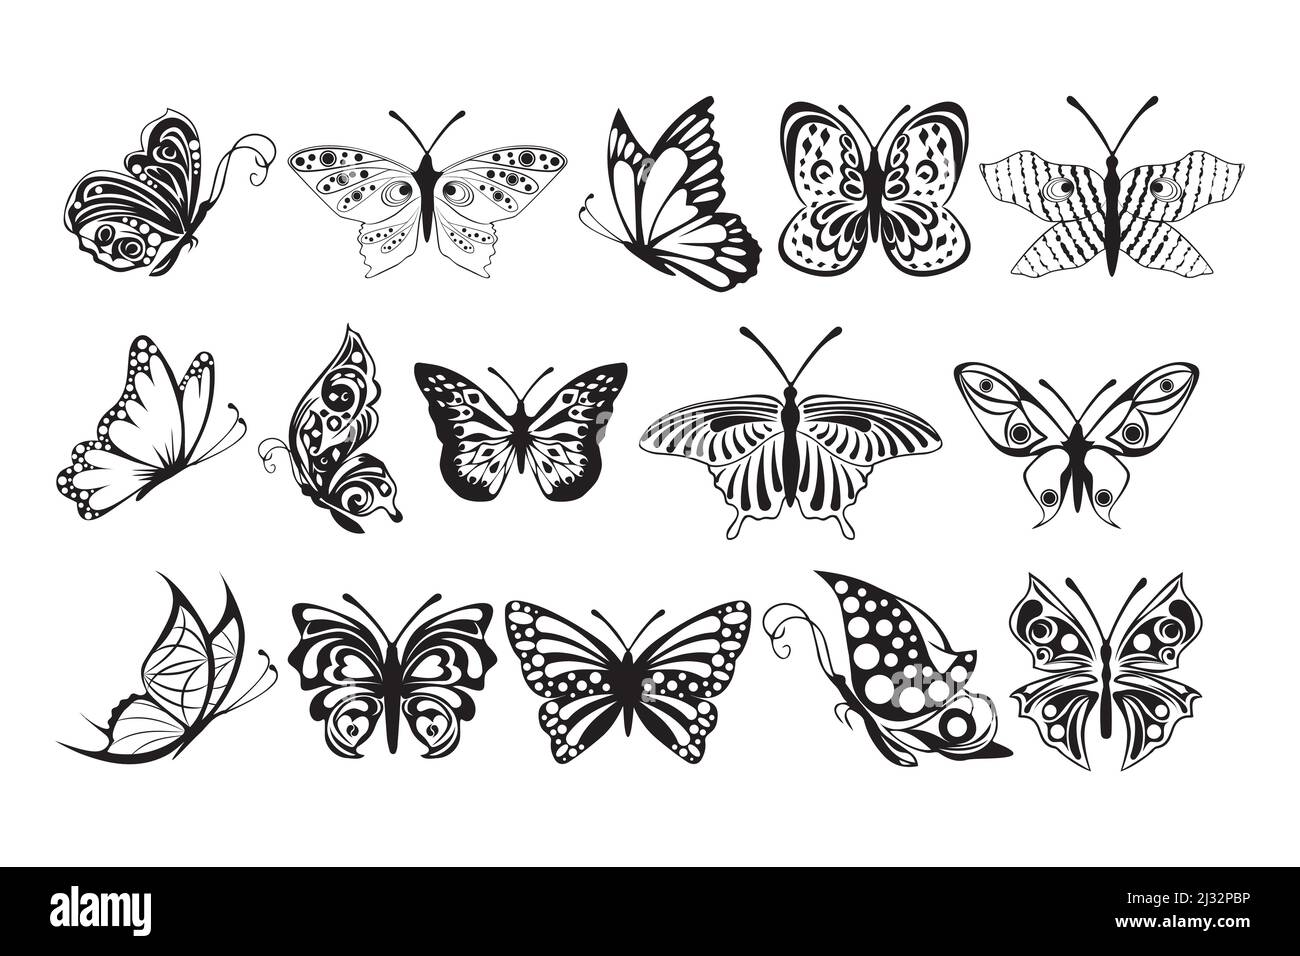 Illustration von vielen Schmetterlingen Muster. Black Sketch Butterflys auf weißem Hintergrund. Vektorgrafik Stock Vektor